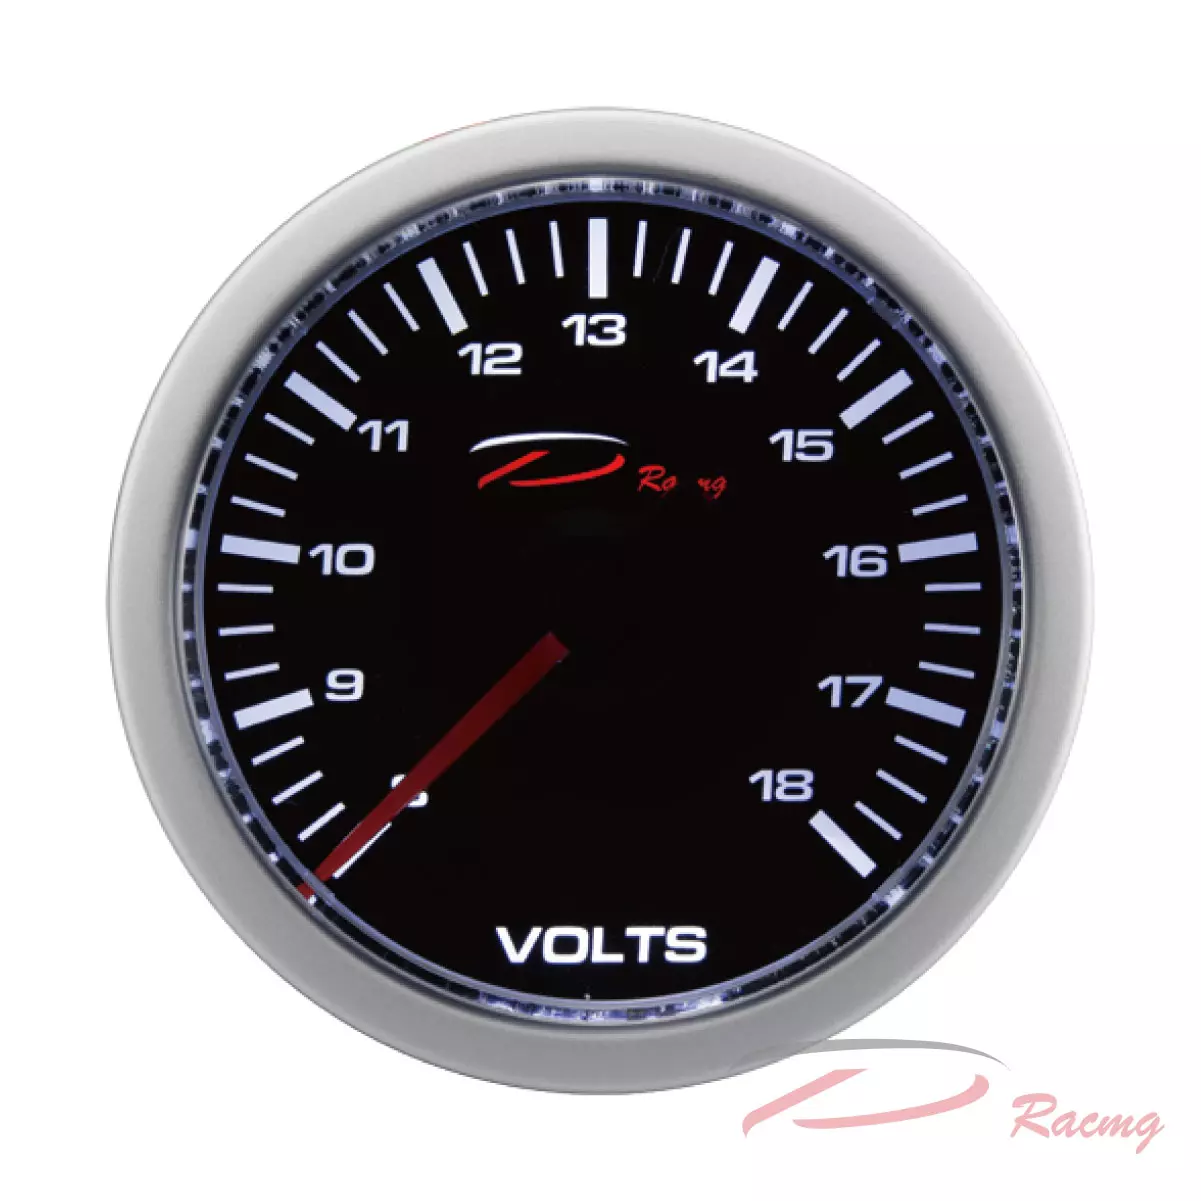 Dracing, Depo racing, universal, digital, analog, 12v, 24v, voltage, voltmeter gauge, car, automotive, 36v, 48v